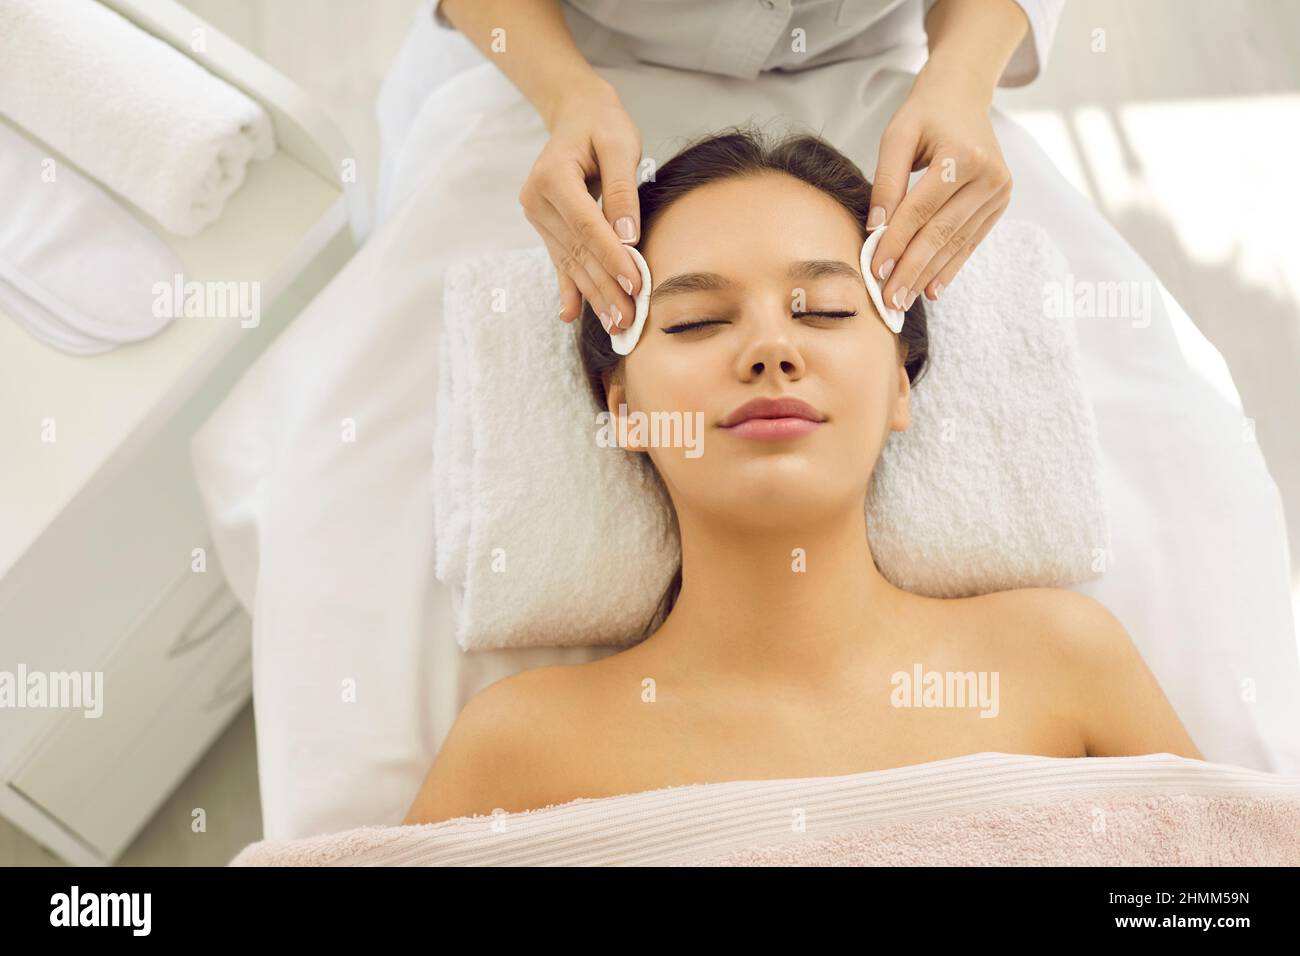 Une femme heureuse se fait enlever son maquillage avant de se faire soigner au centre de beauté Banque D'Images